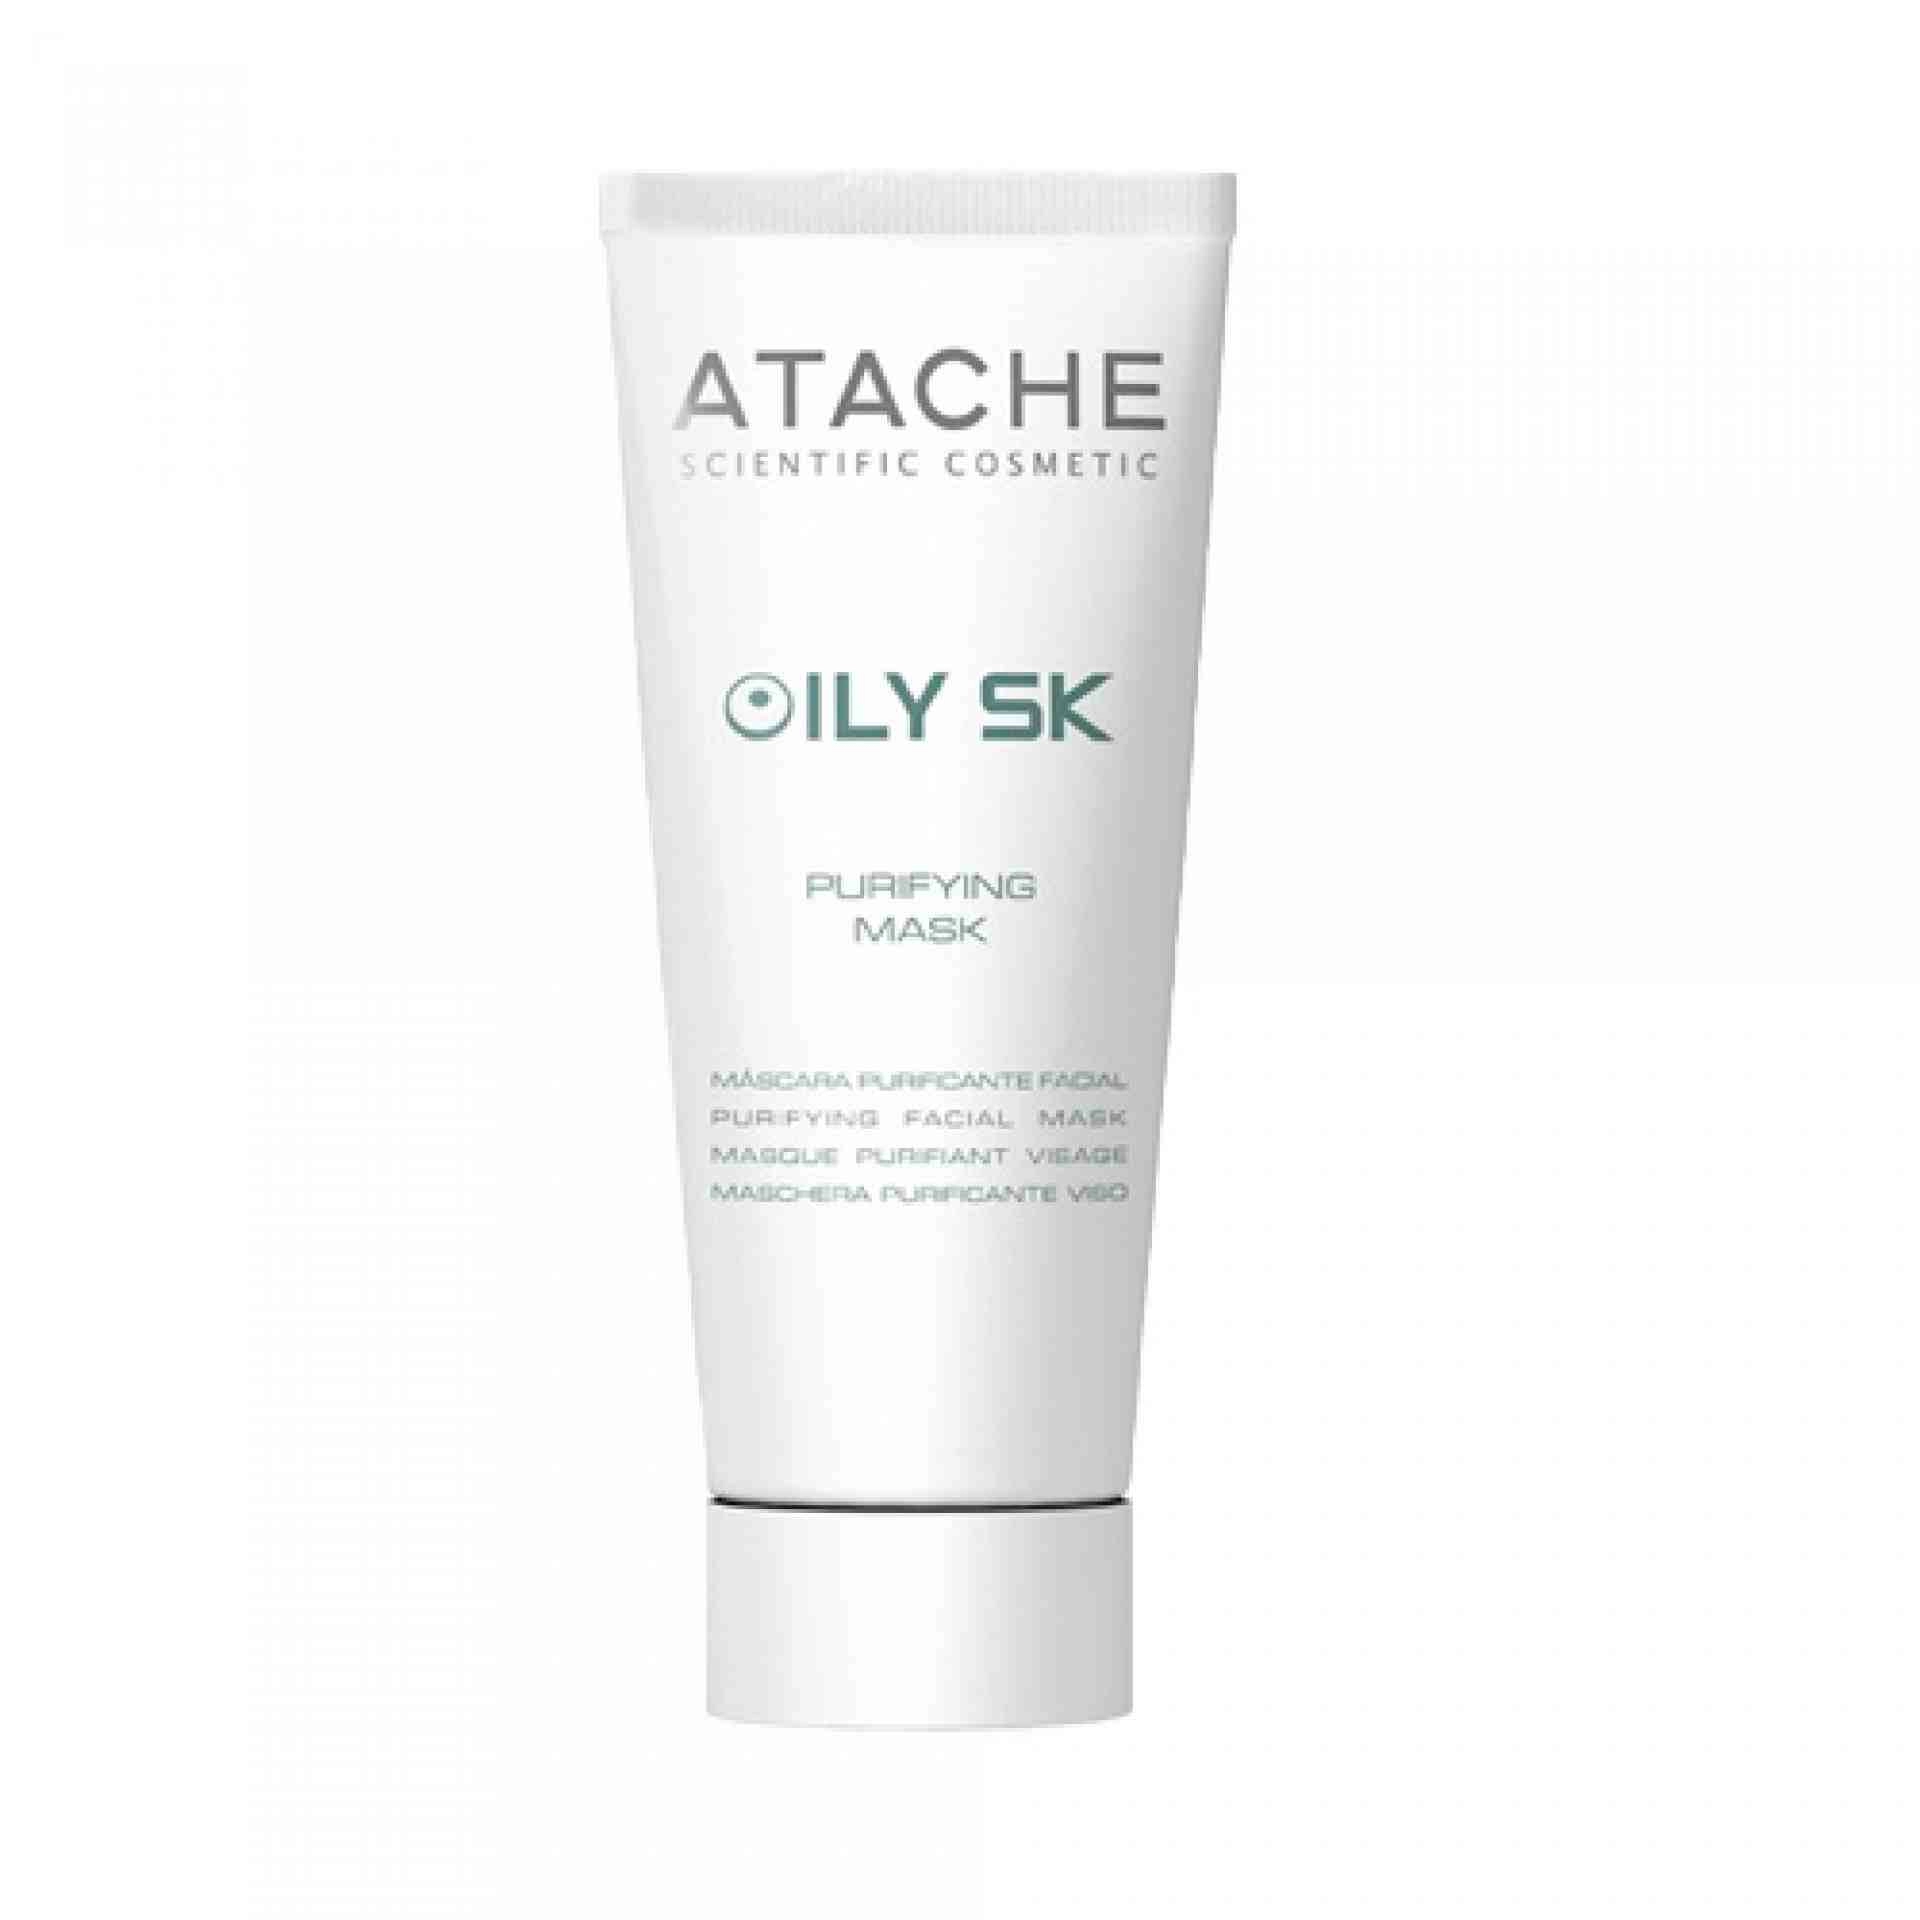 Purifying Mask - Mascarilla purificante facial 50 ml - Oily SK - Atache ®